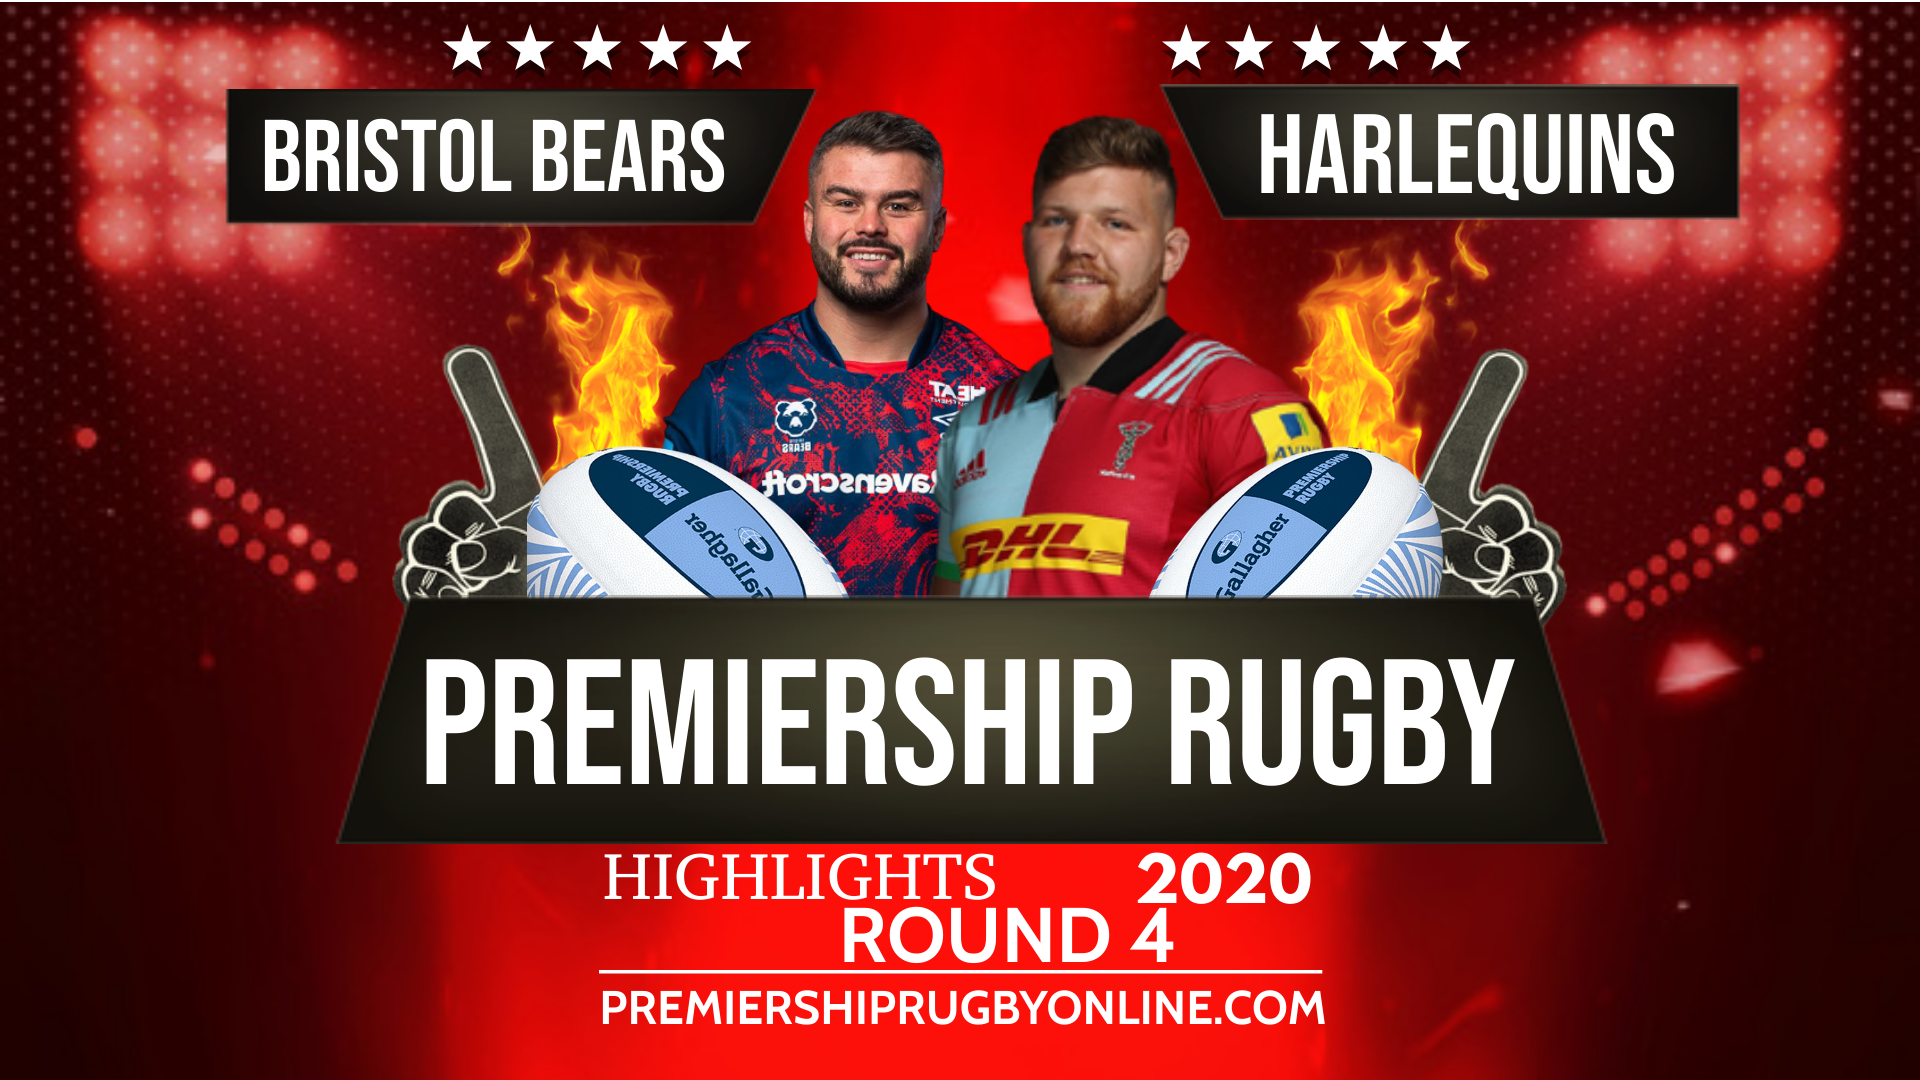 Harlequins Vs Bristol Bears Highlights 2020 RD 4